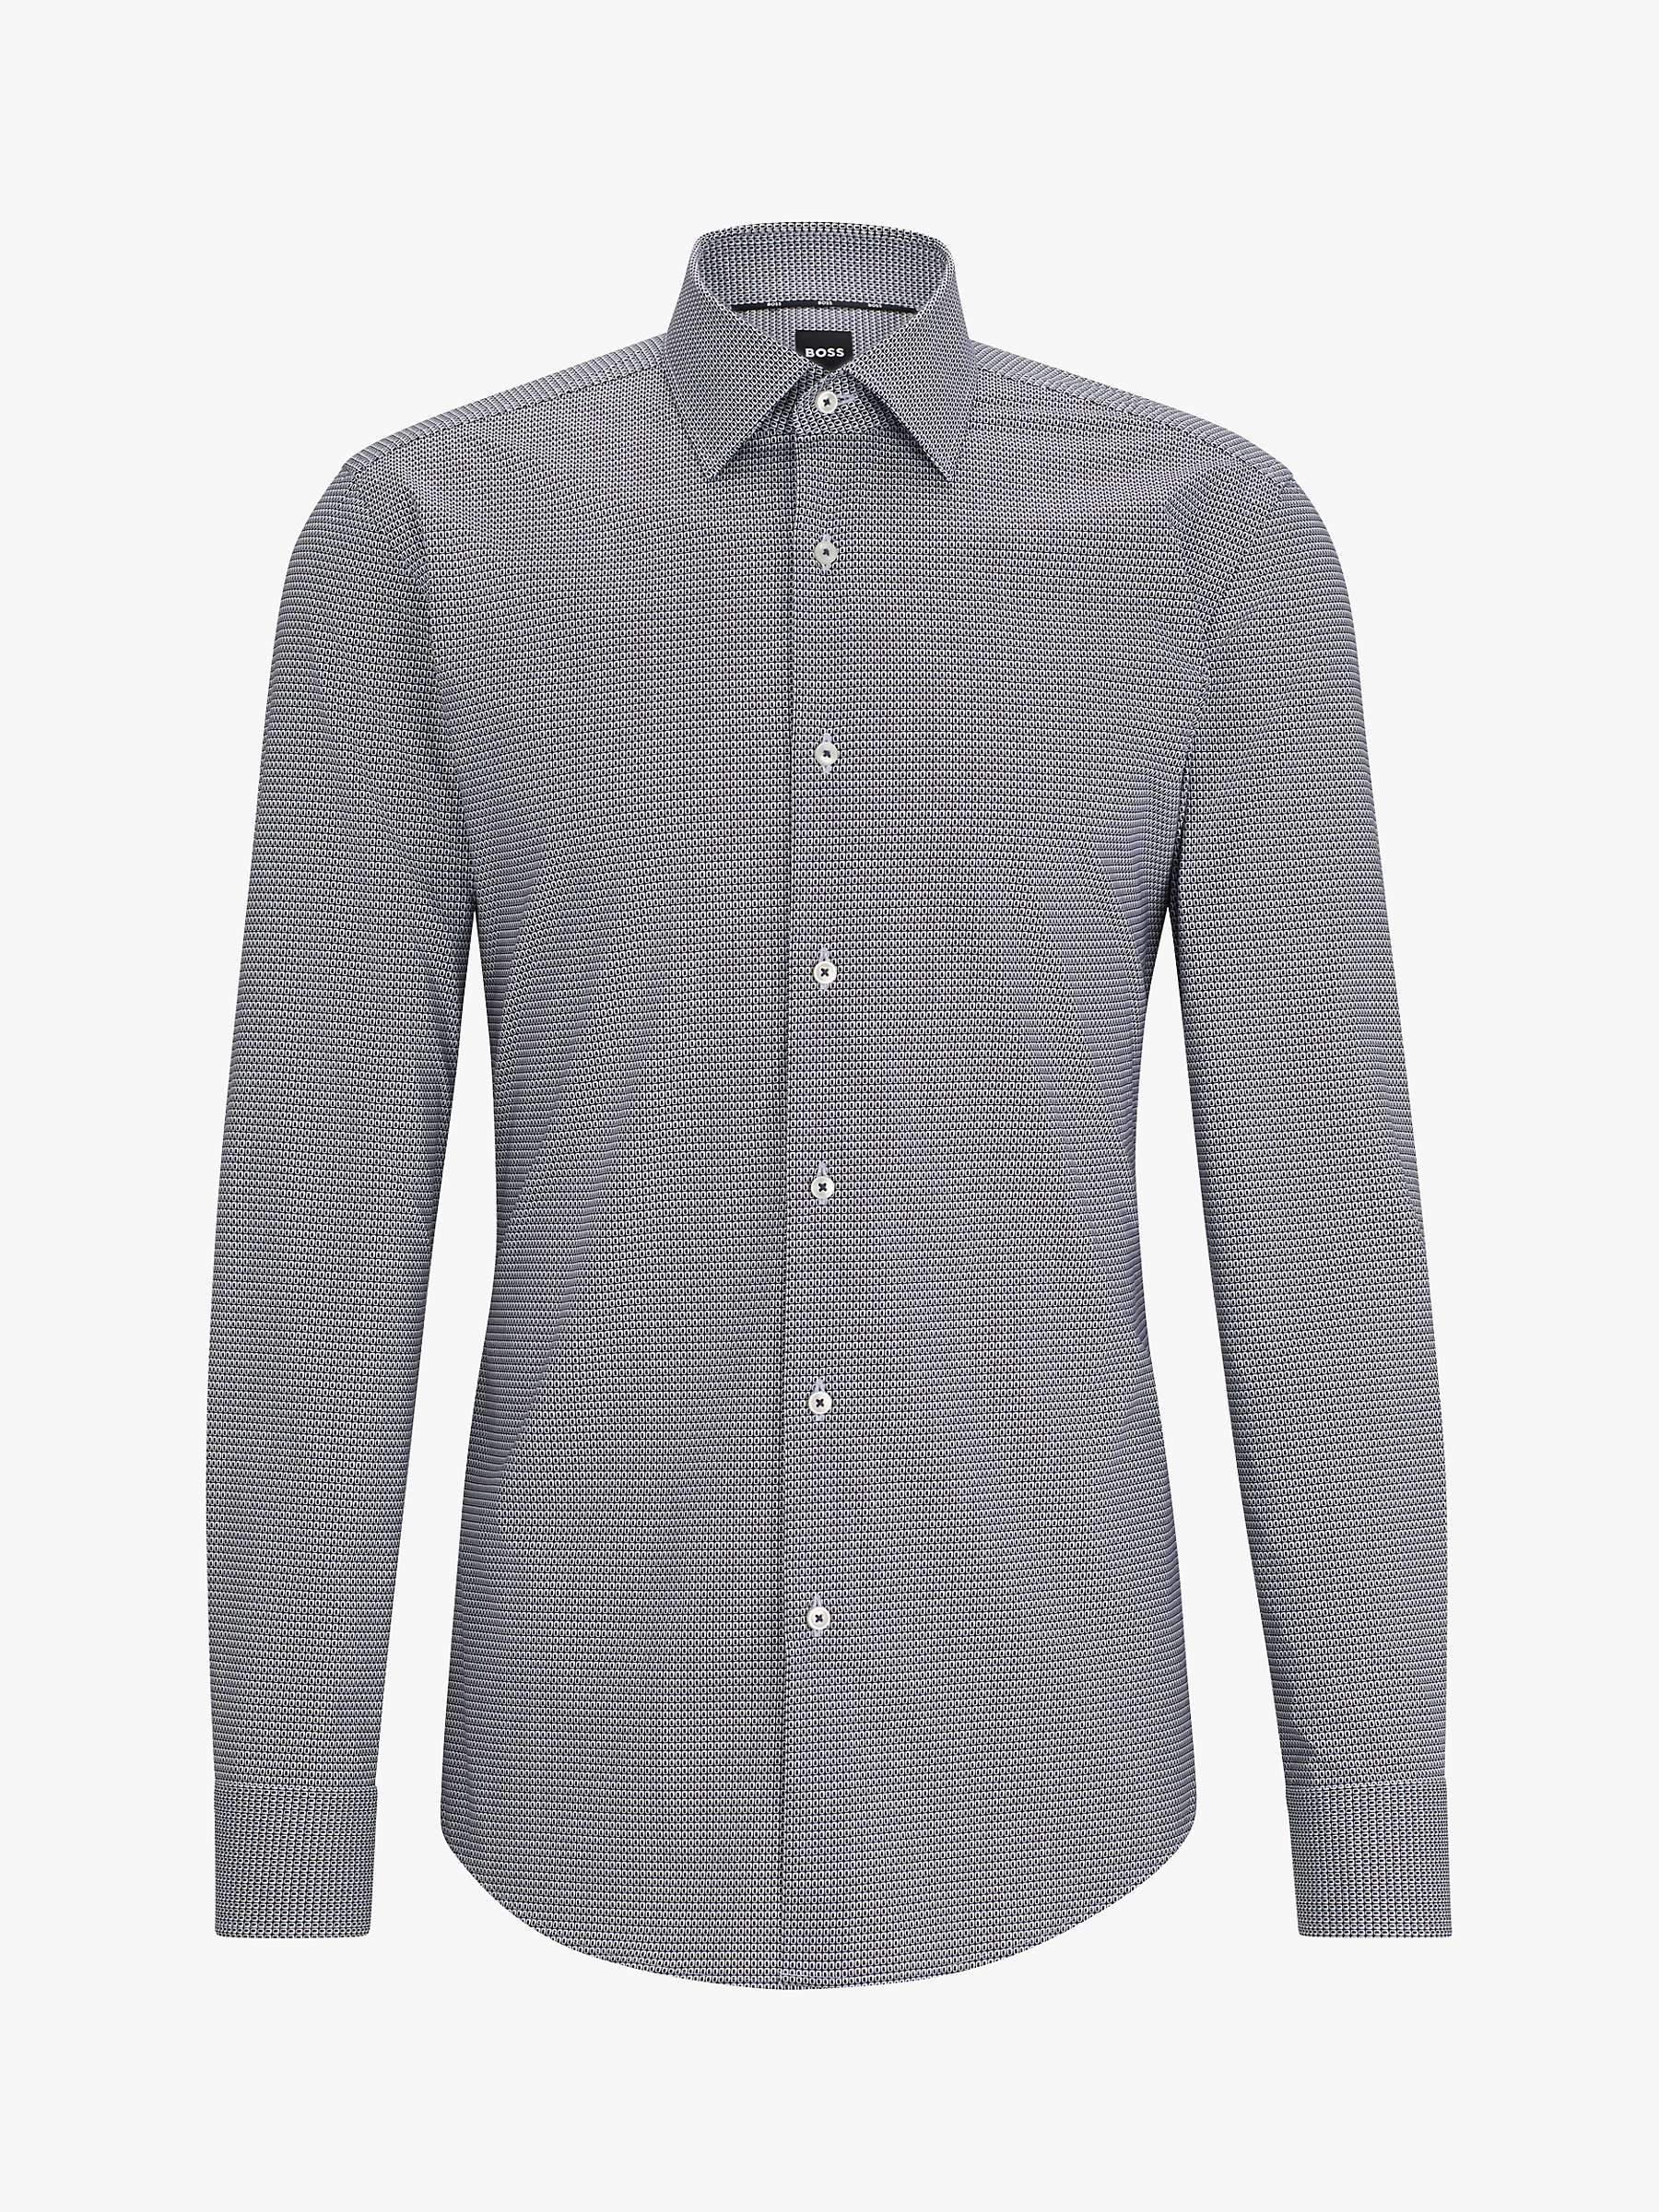 Buy BOSS H-Hank Kent Long Sleeve Shirt, Dark Blue Online at johnlewis.com